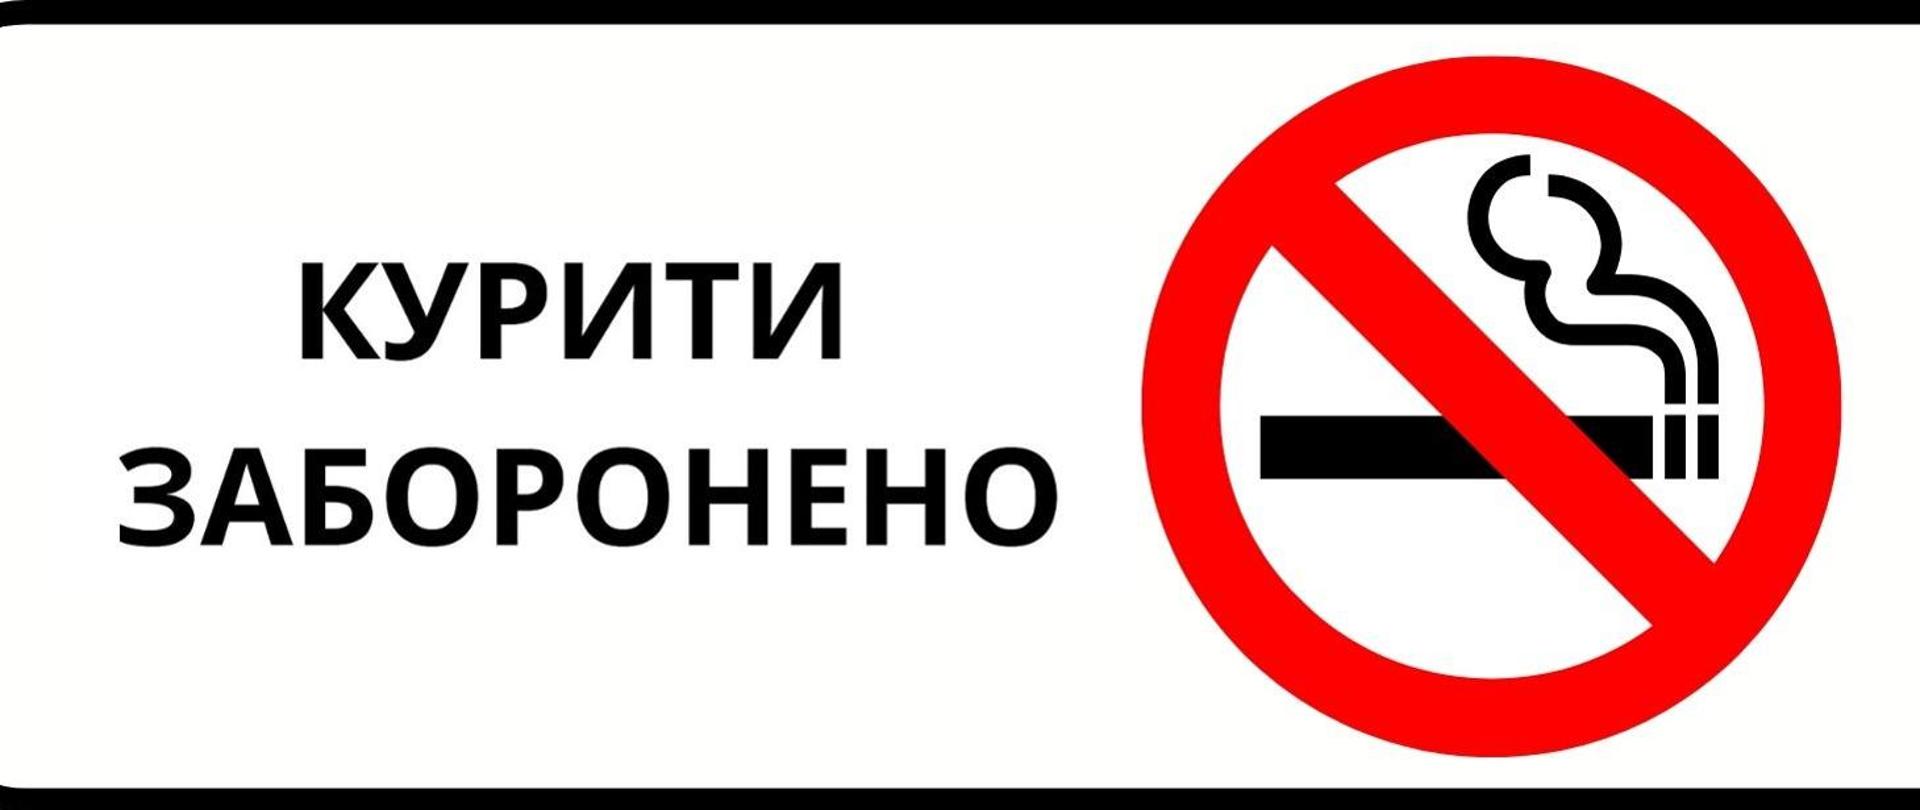 Zakaz palenia w języku ukraińskim